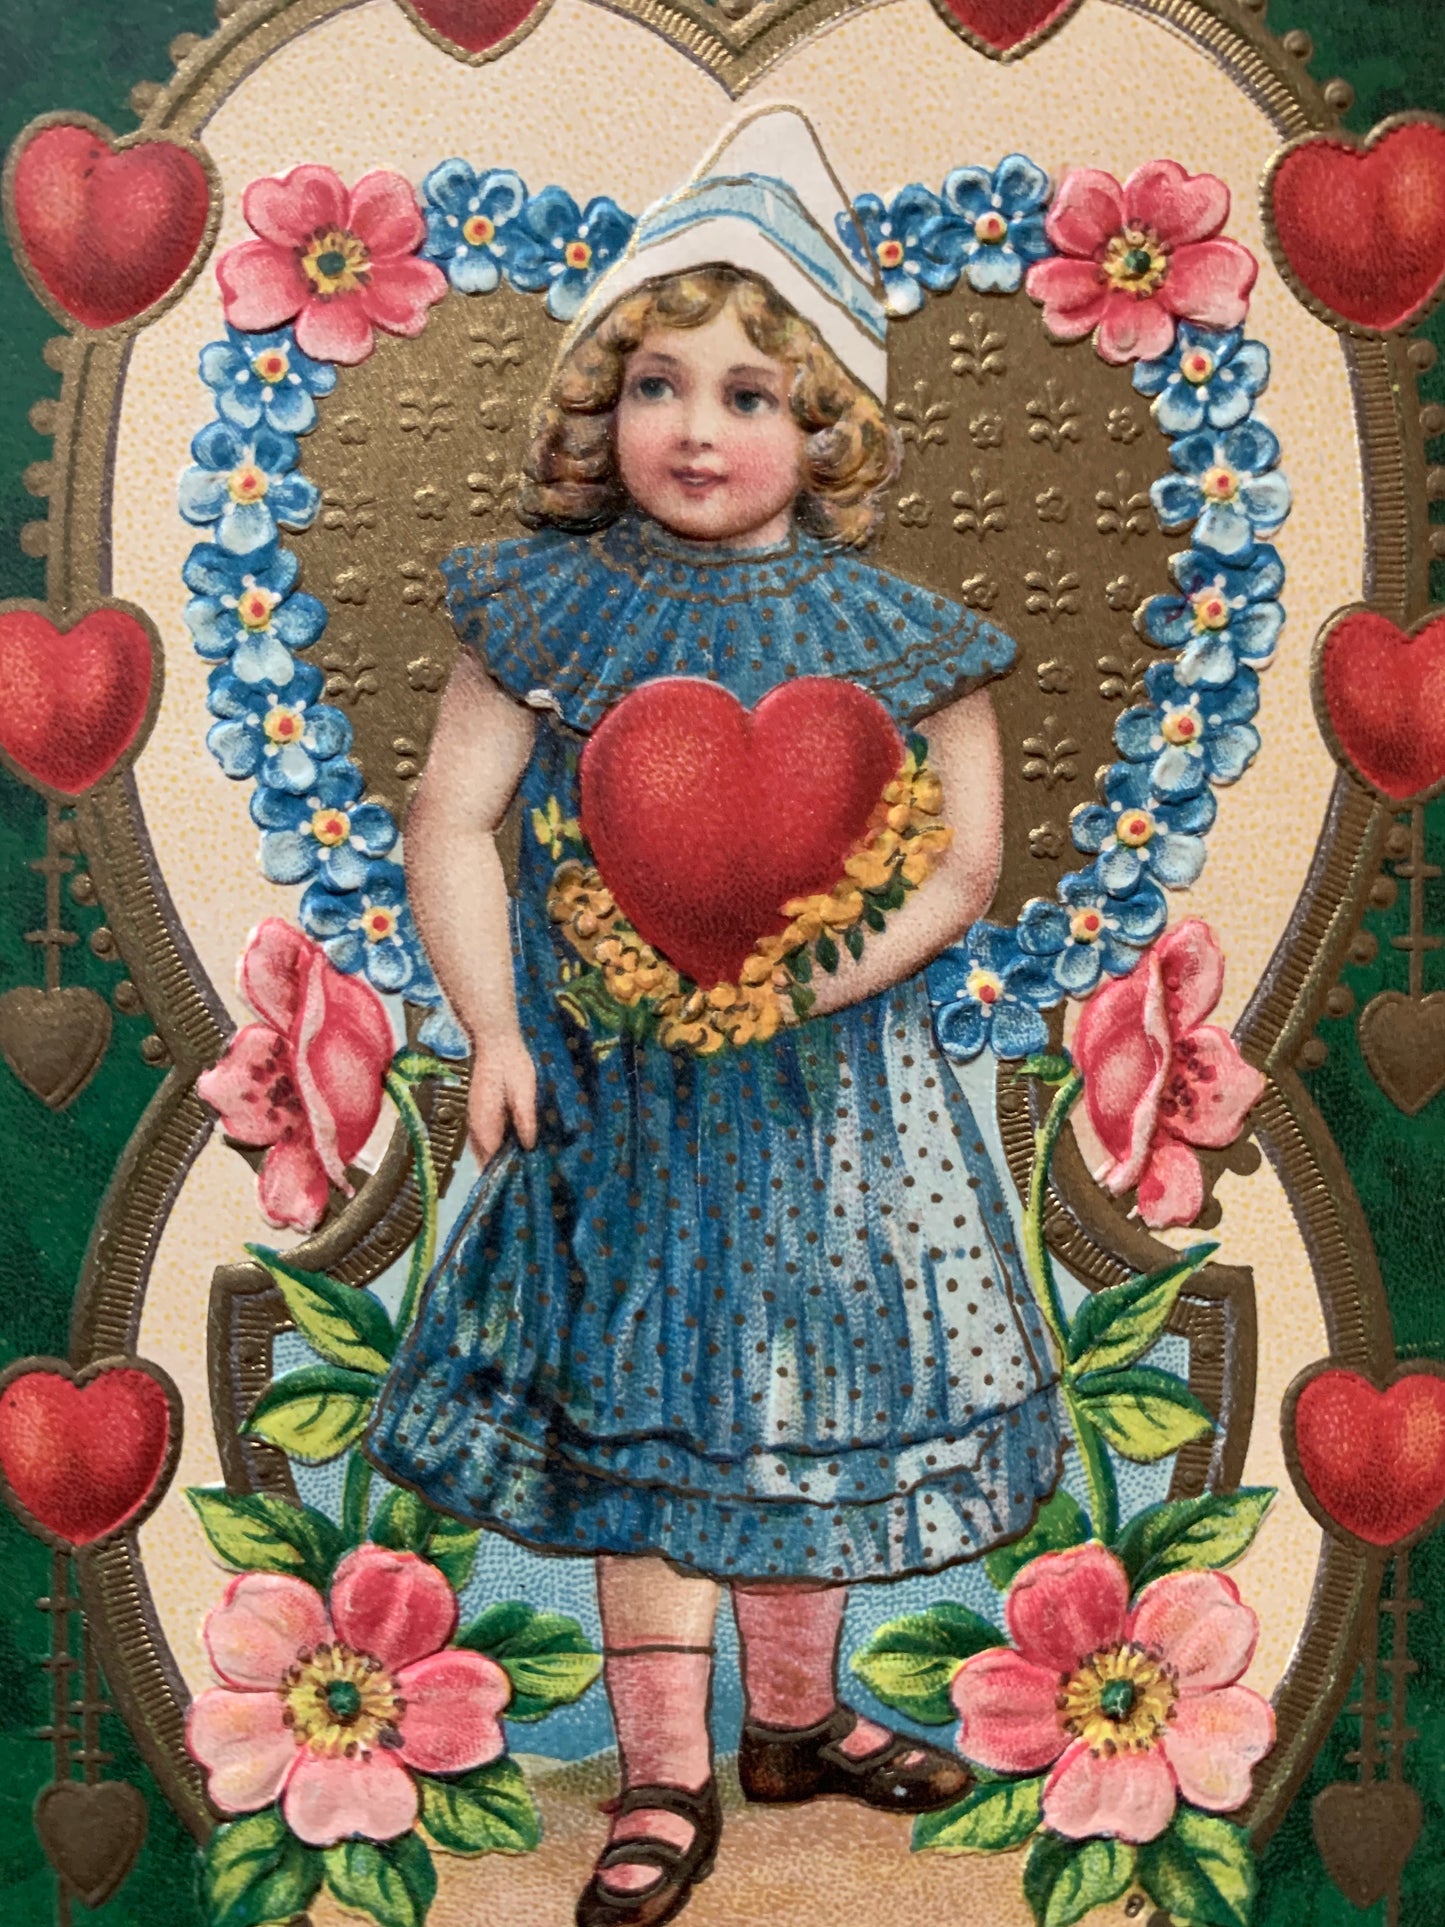 Antique German Valentine postcard